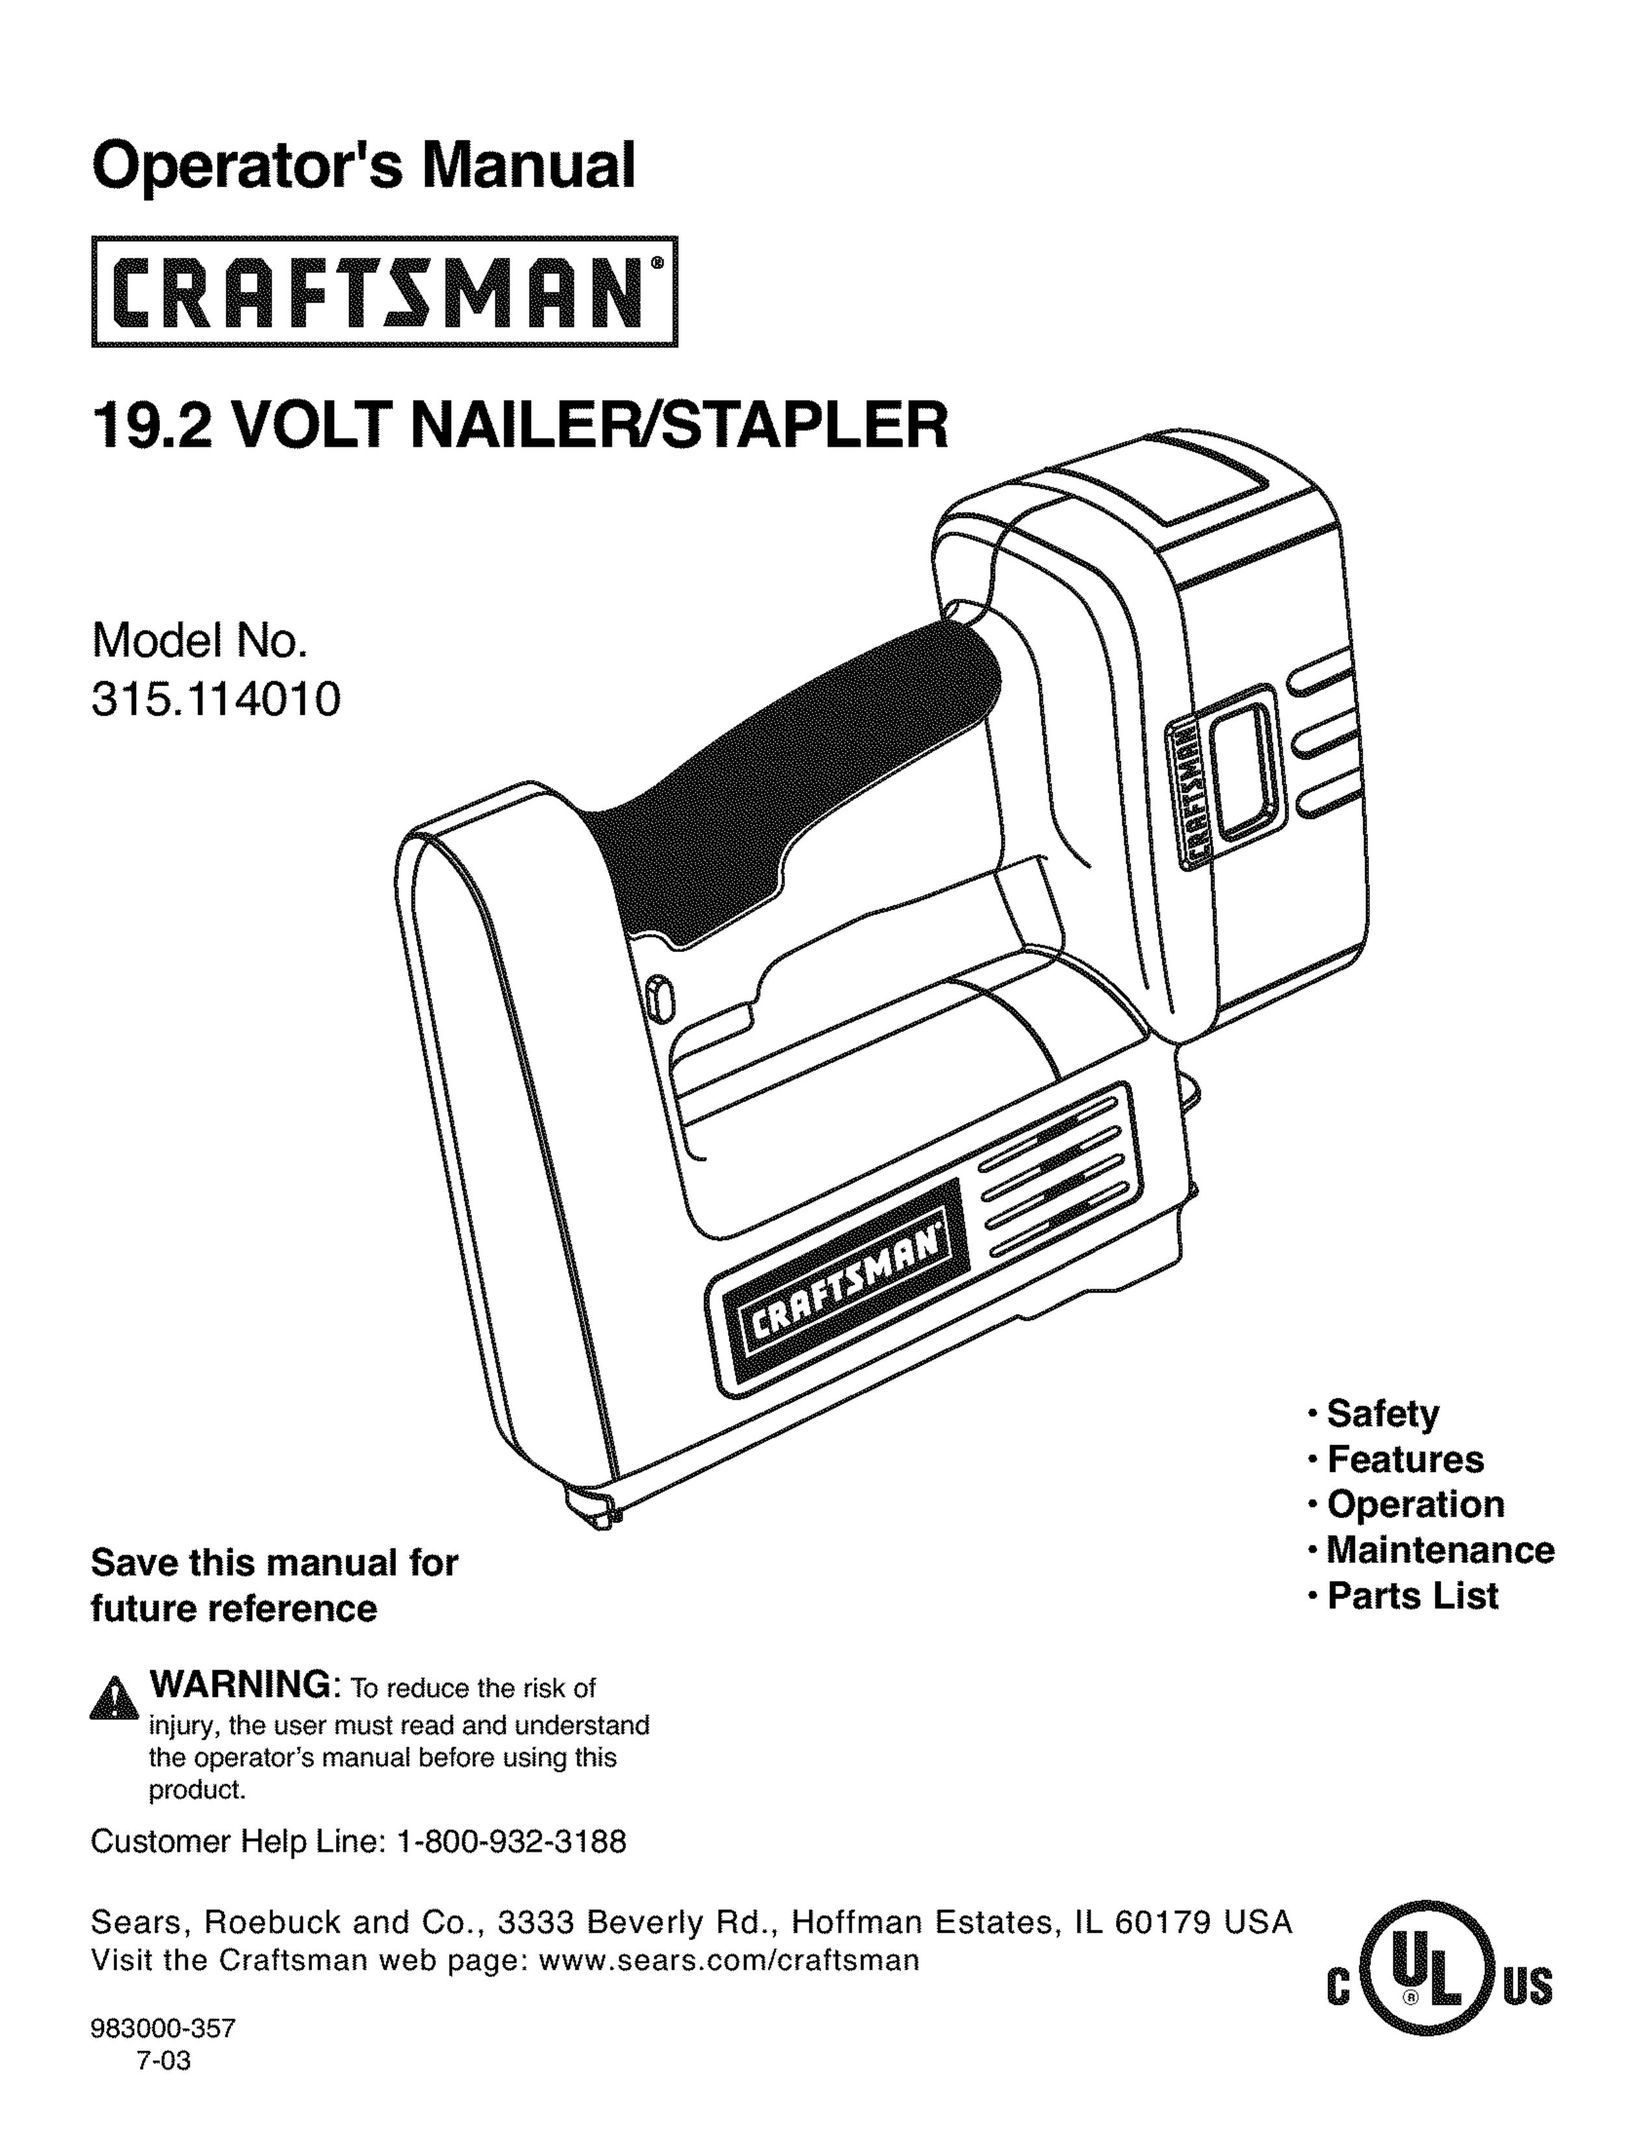 Craftsman 315.11401 Staple Gun User Manual